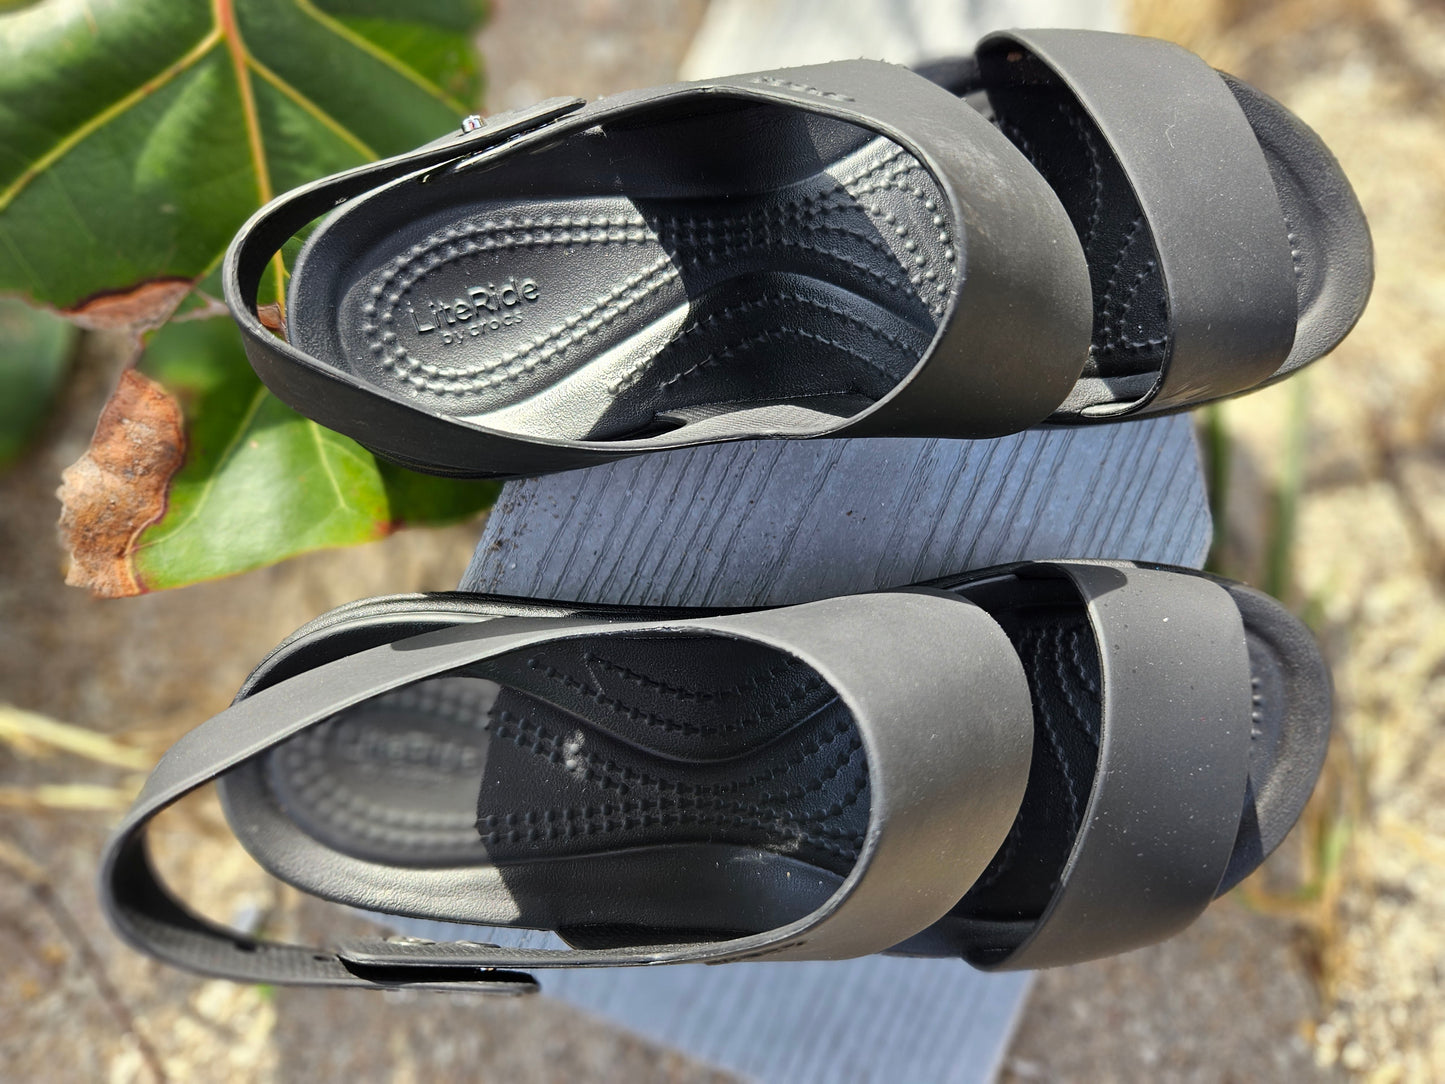 Women's CROCS Strappy Platform Rubber Sandals - Black, Size 7